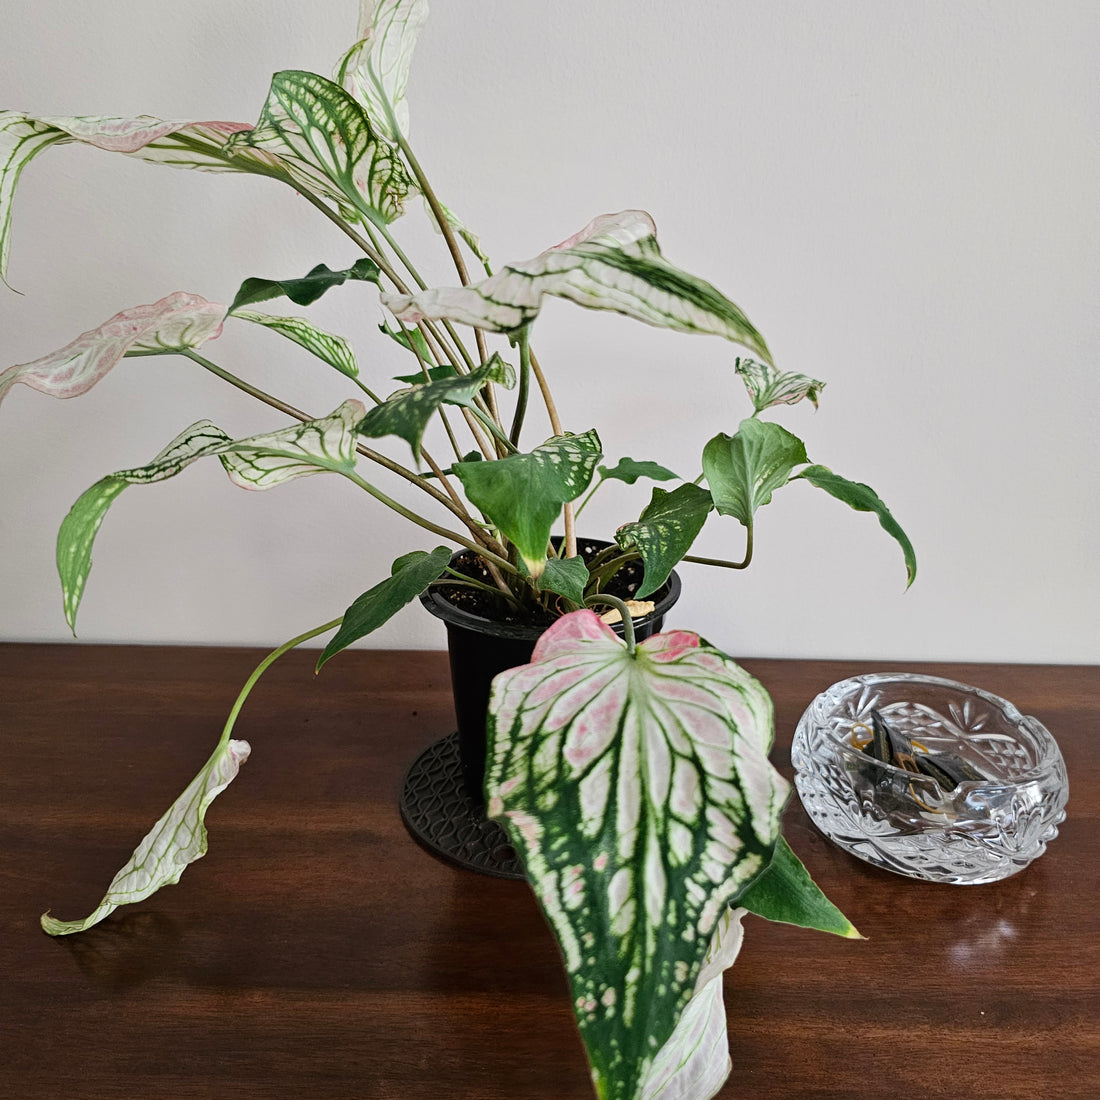 Caladium / Caladium Pink / Araceae / Peppermint Leafy